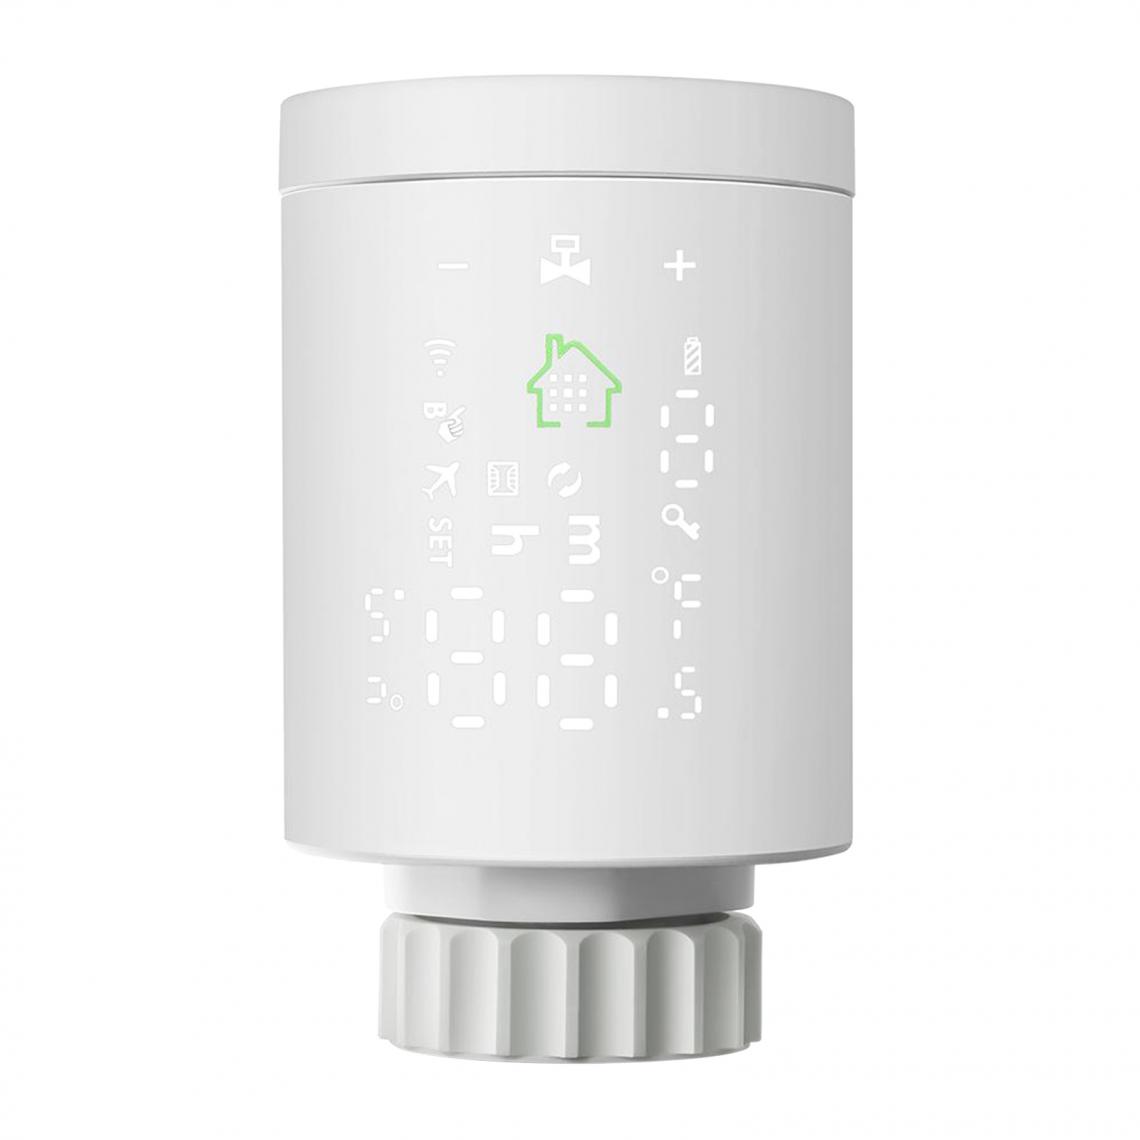 marque generique - Robinet Thermostatique Radiateur Thermostat intelligent de radiateur Ecran Tactile LCD Rétroéclairé adaptateurs de valve RA RAVL RAV - Thermostat